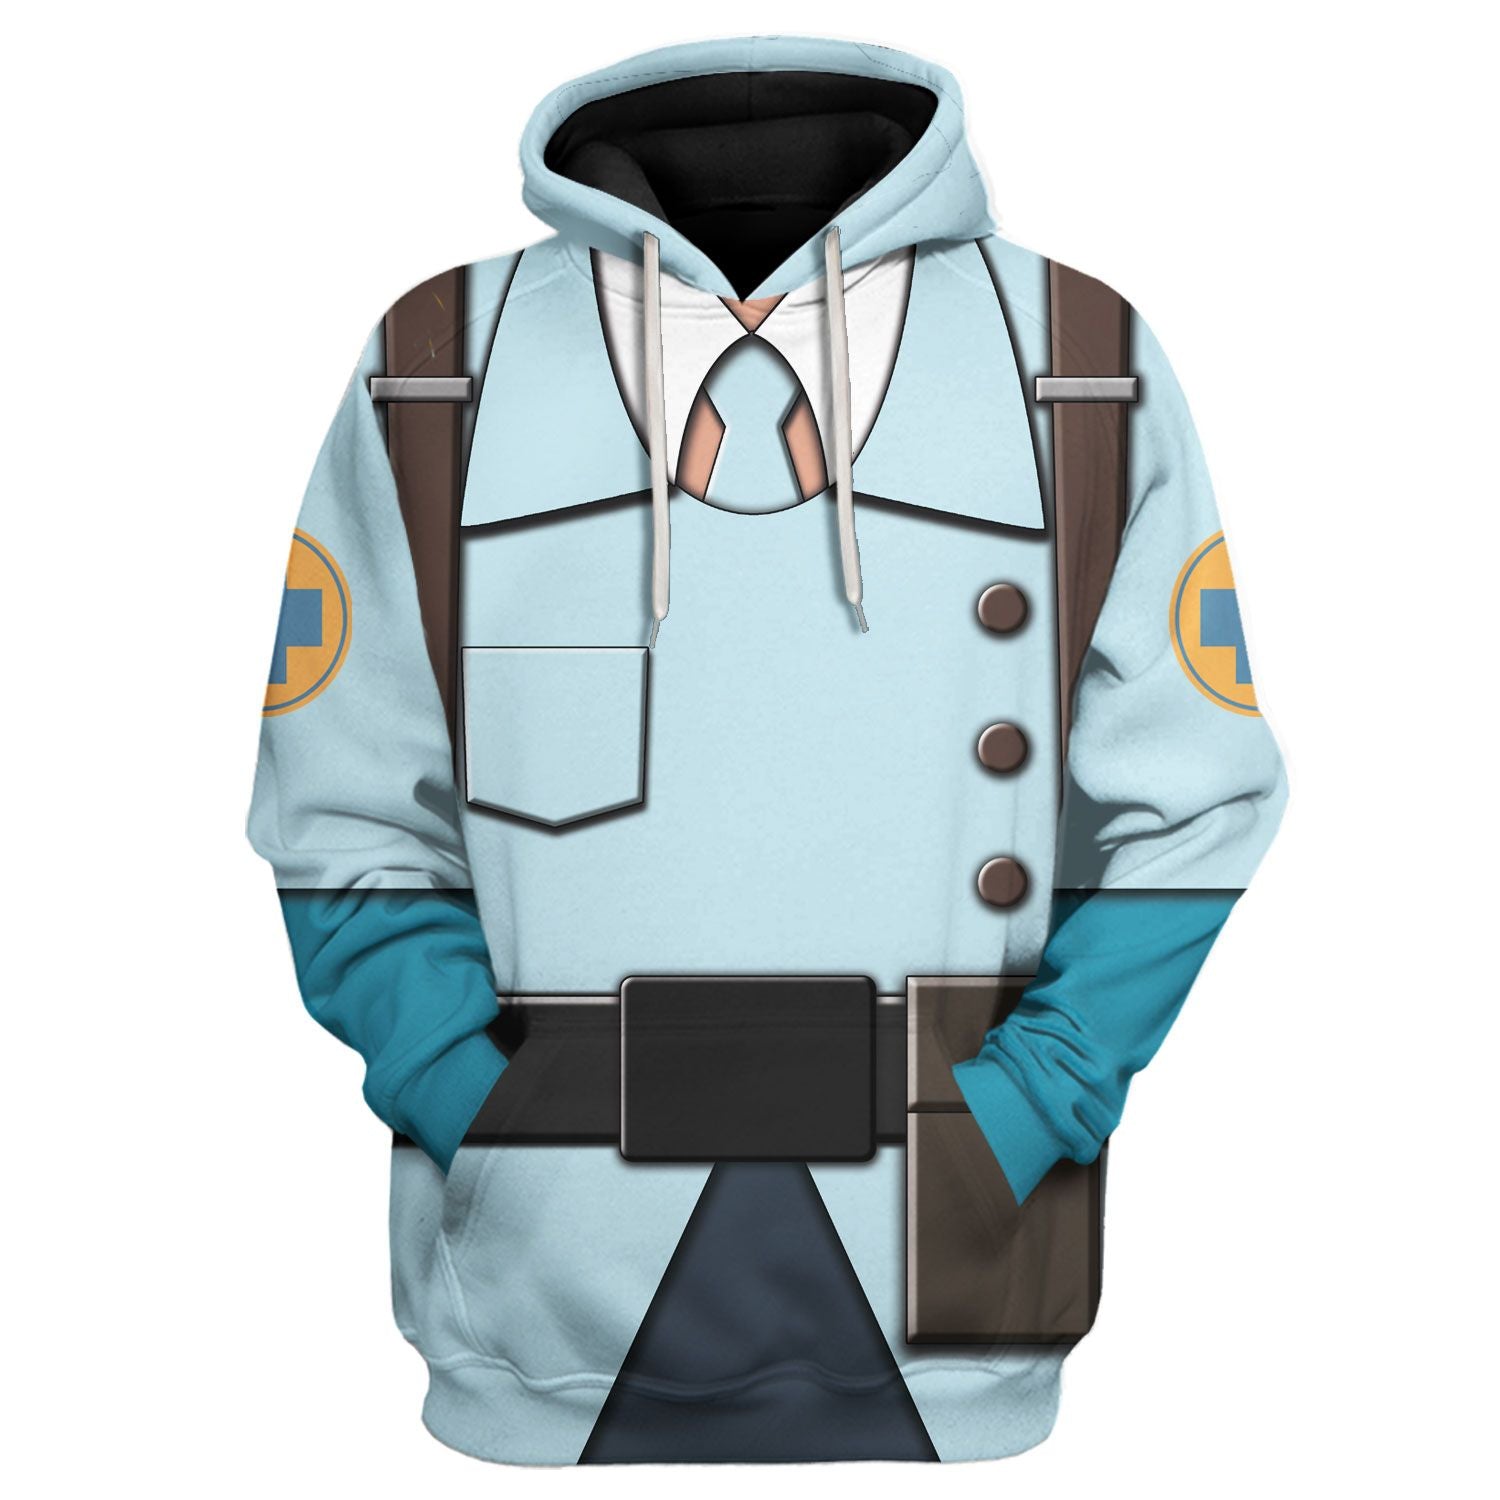 Medic Blue Team TF2 hoodie